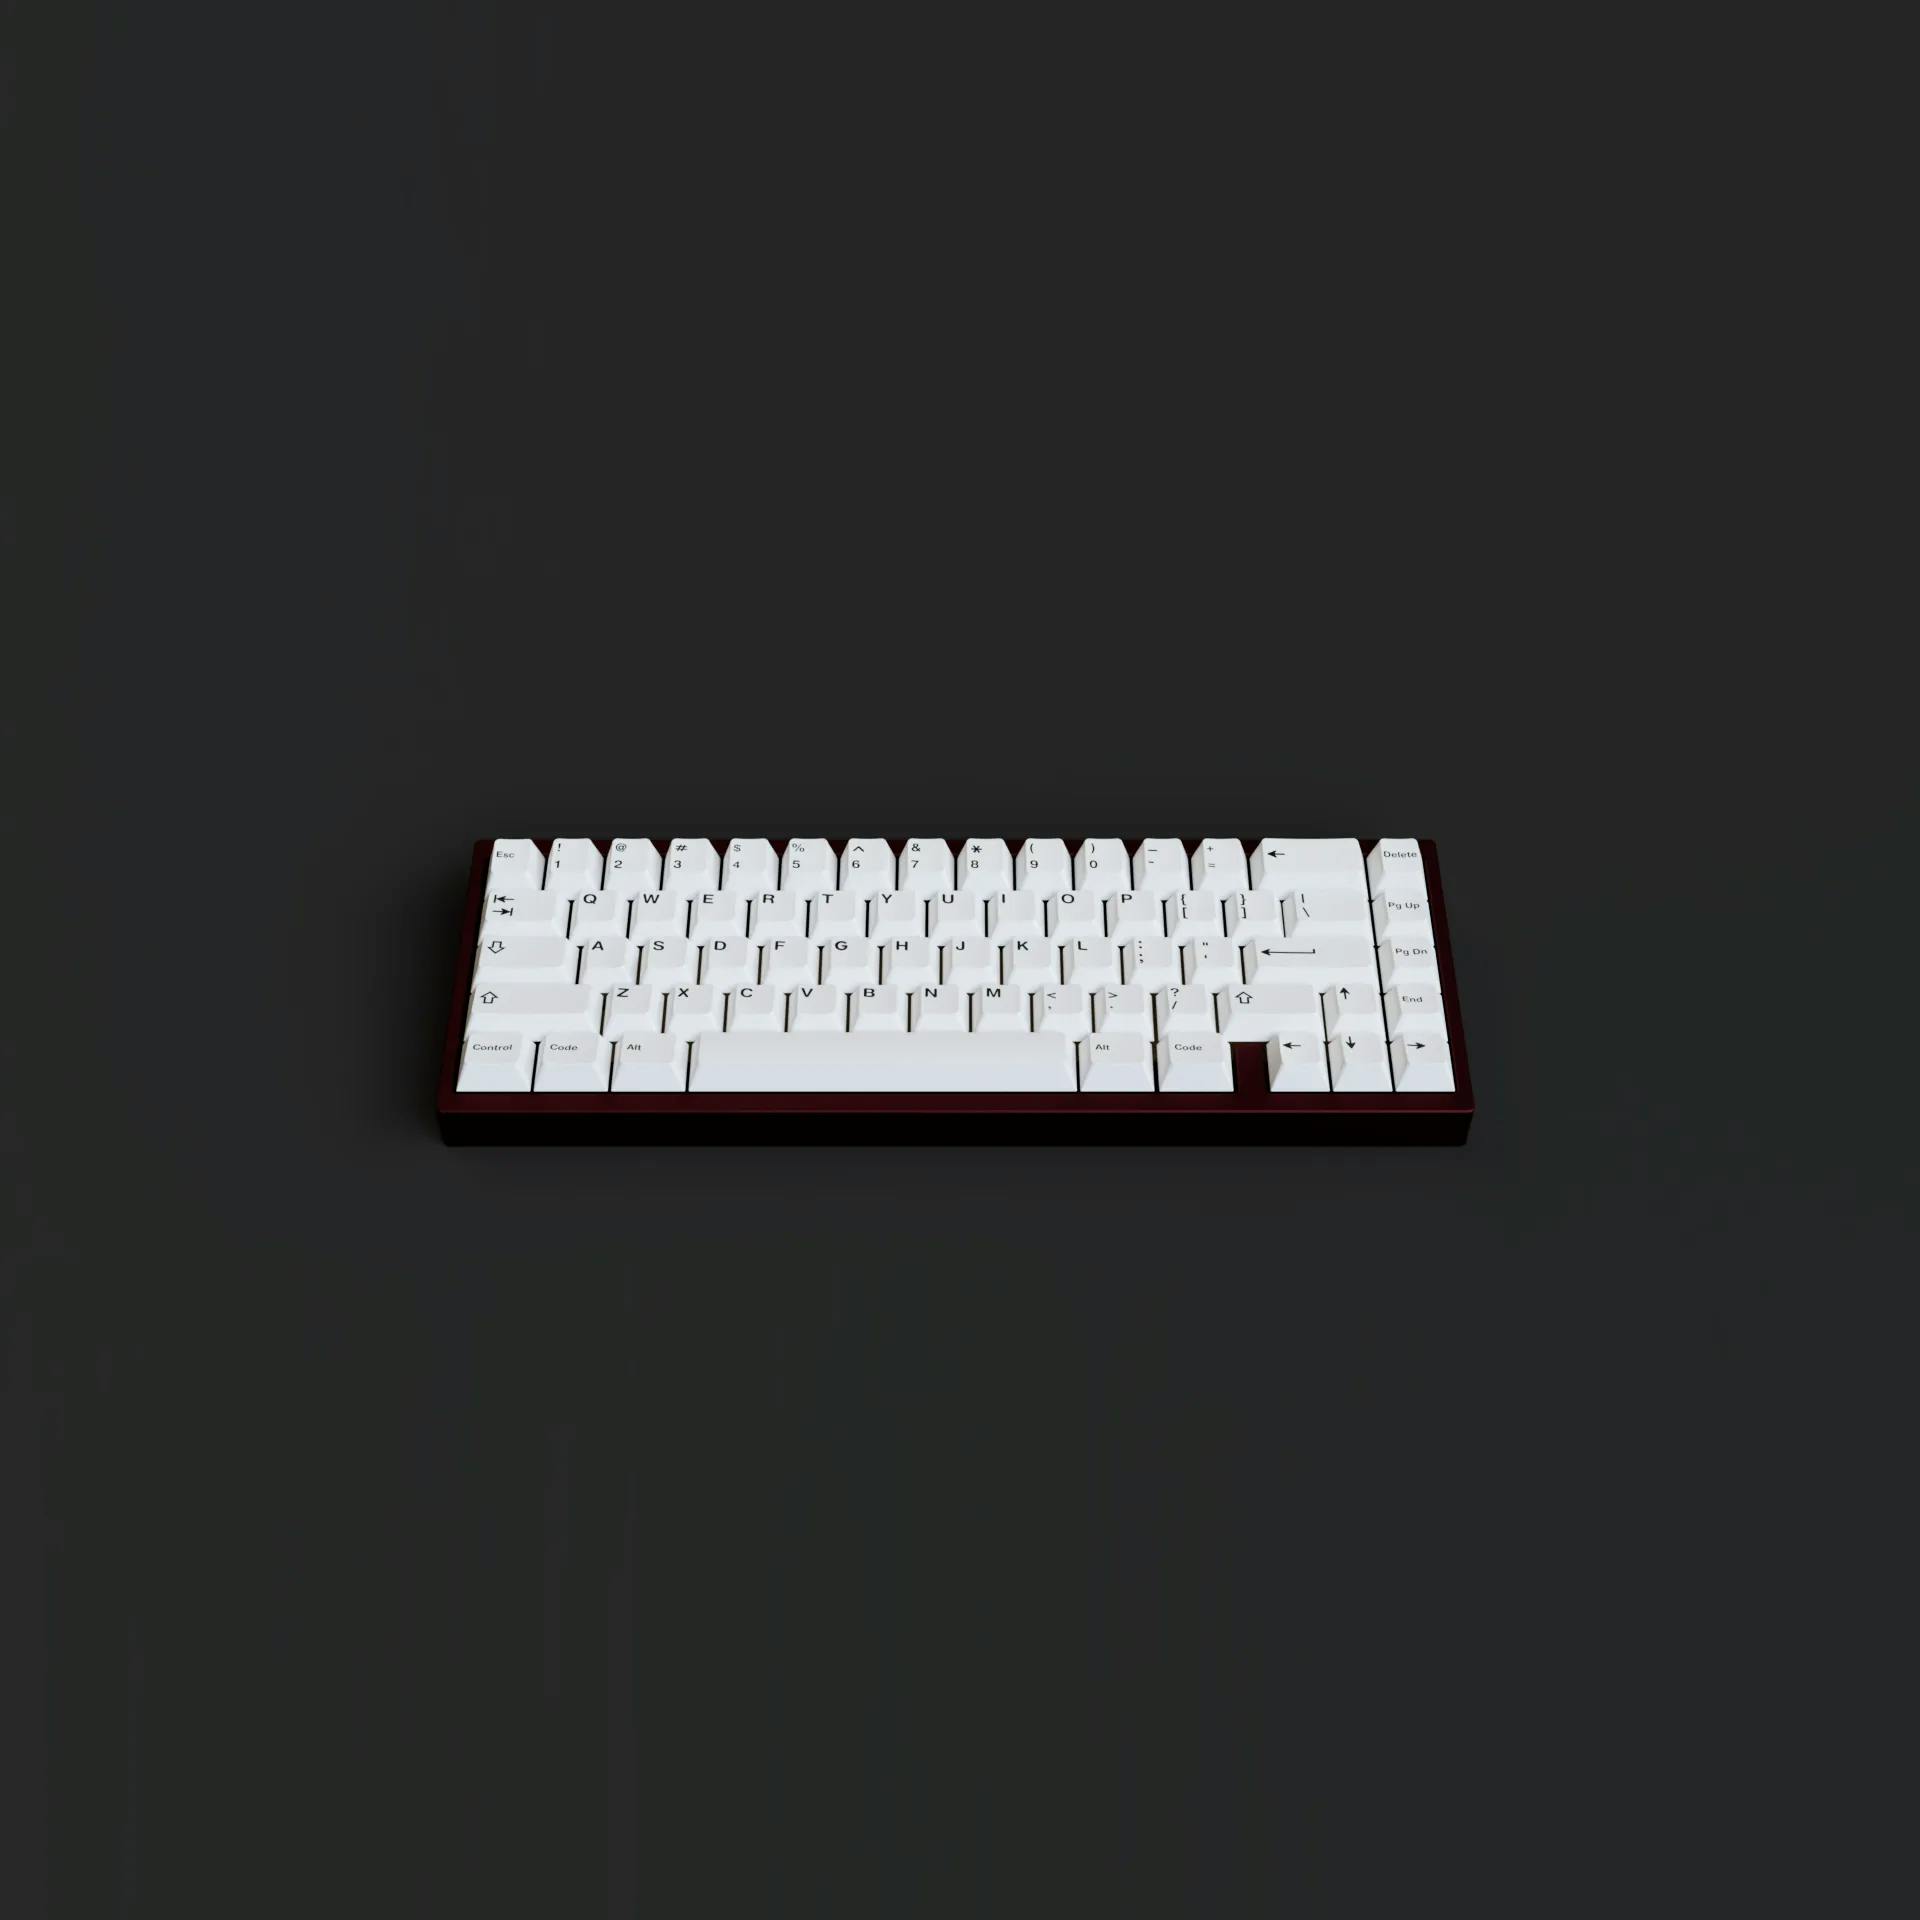 Image for Ciel65 Keyboard Kit